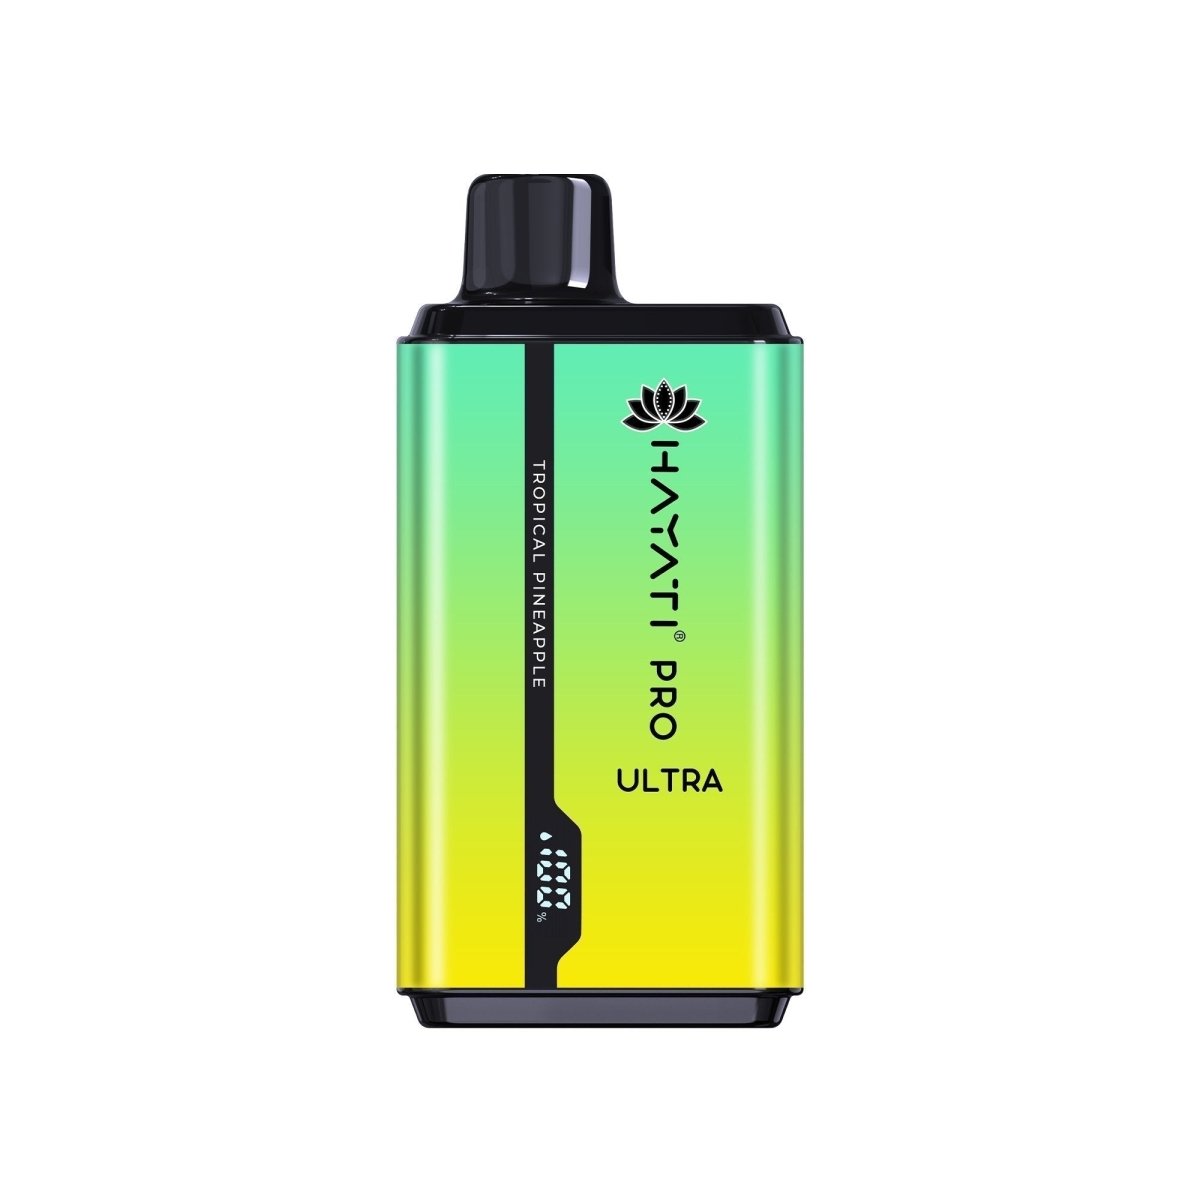 0MG Hayati Pro Ultra 15000 Puffs Disposable Vape (BOX OF 10) - Mcr Vape Distro